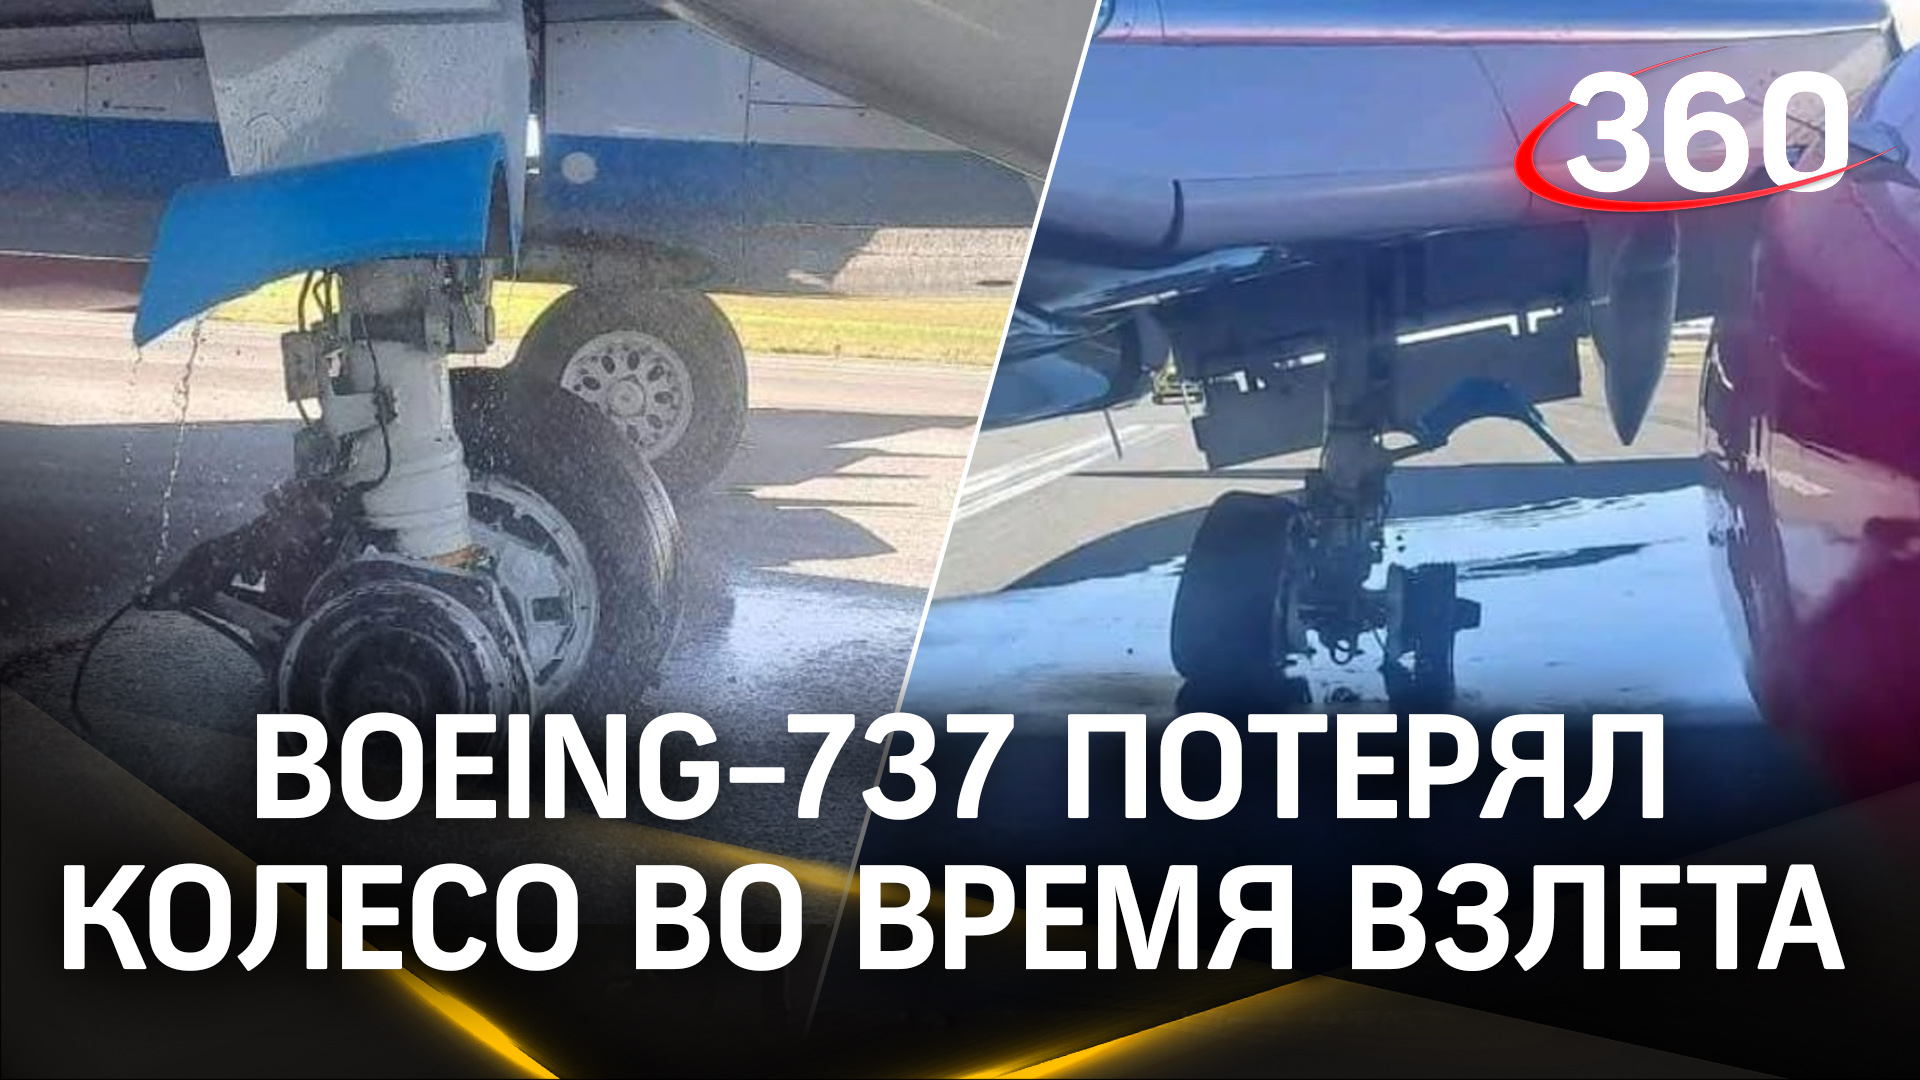 У самолета отвалилось колесо при разбеге: диспетчеры успели предотвратить трагедию с Boeing-737